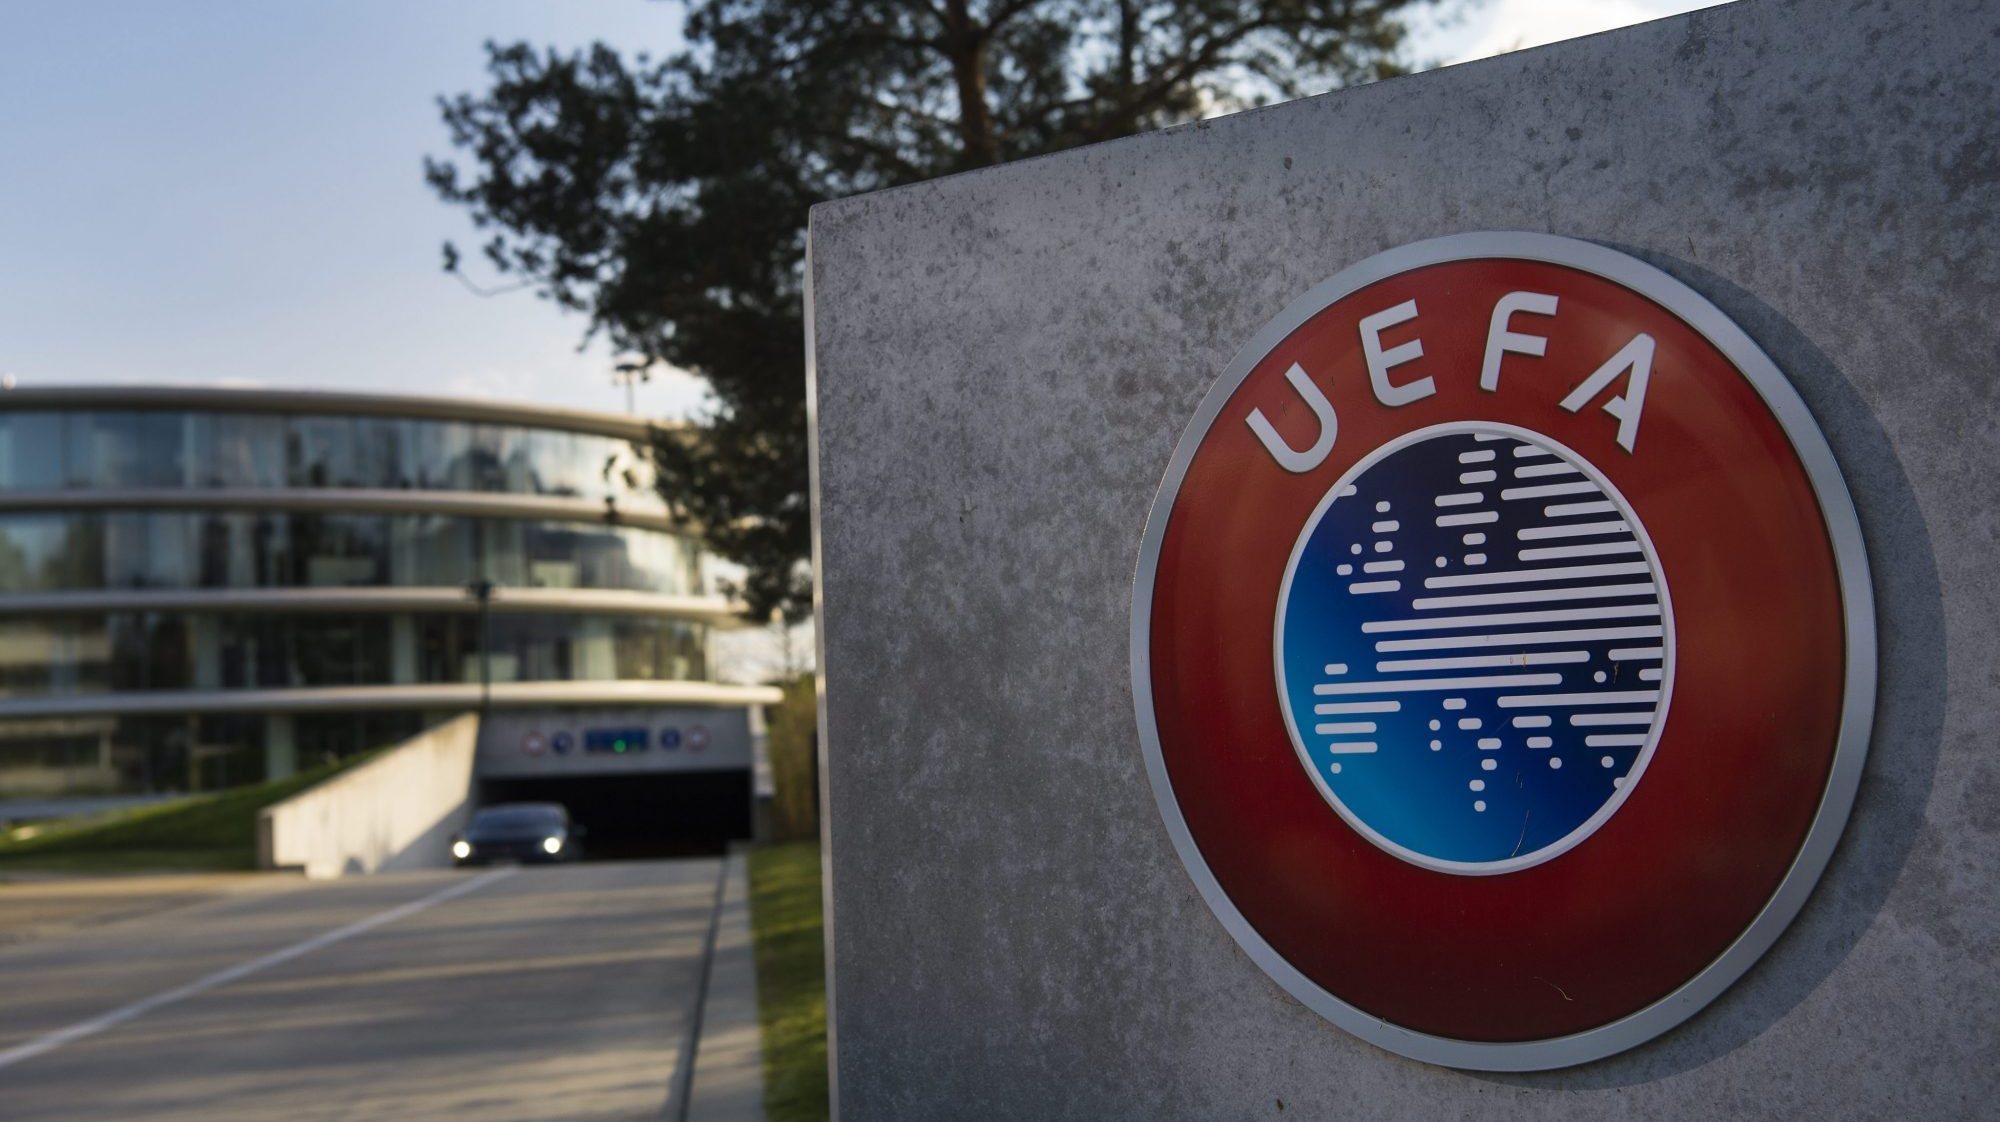 Nadine Kessler, diretora-geral da UEFA, considerou, em declarações divulgadas pelo organismo, que o facto de os bilhetes terem esgotado é sinal de que o futebol feminino atingiu um novo nível